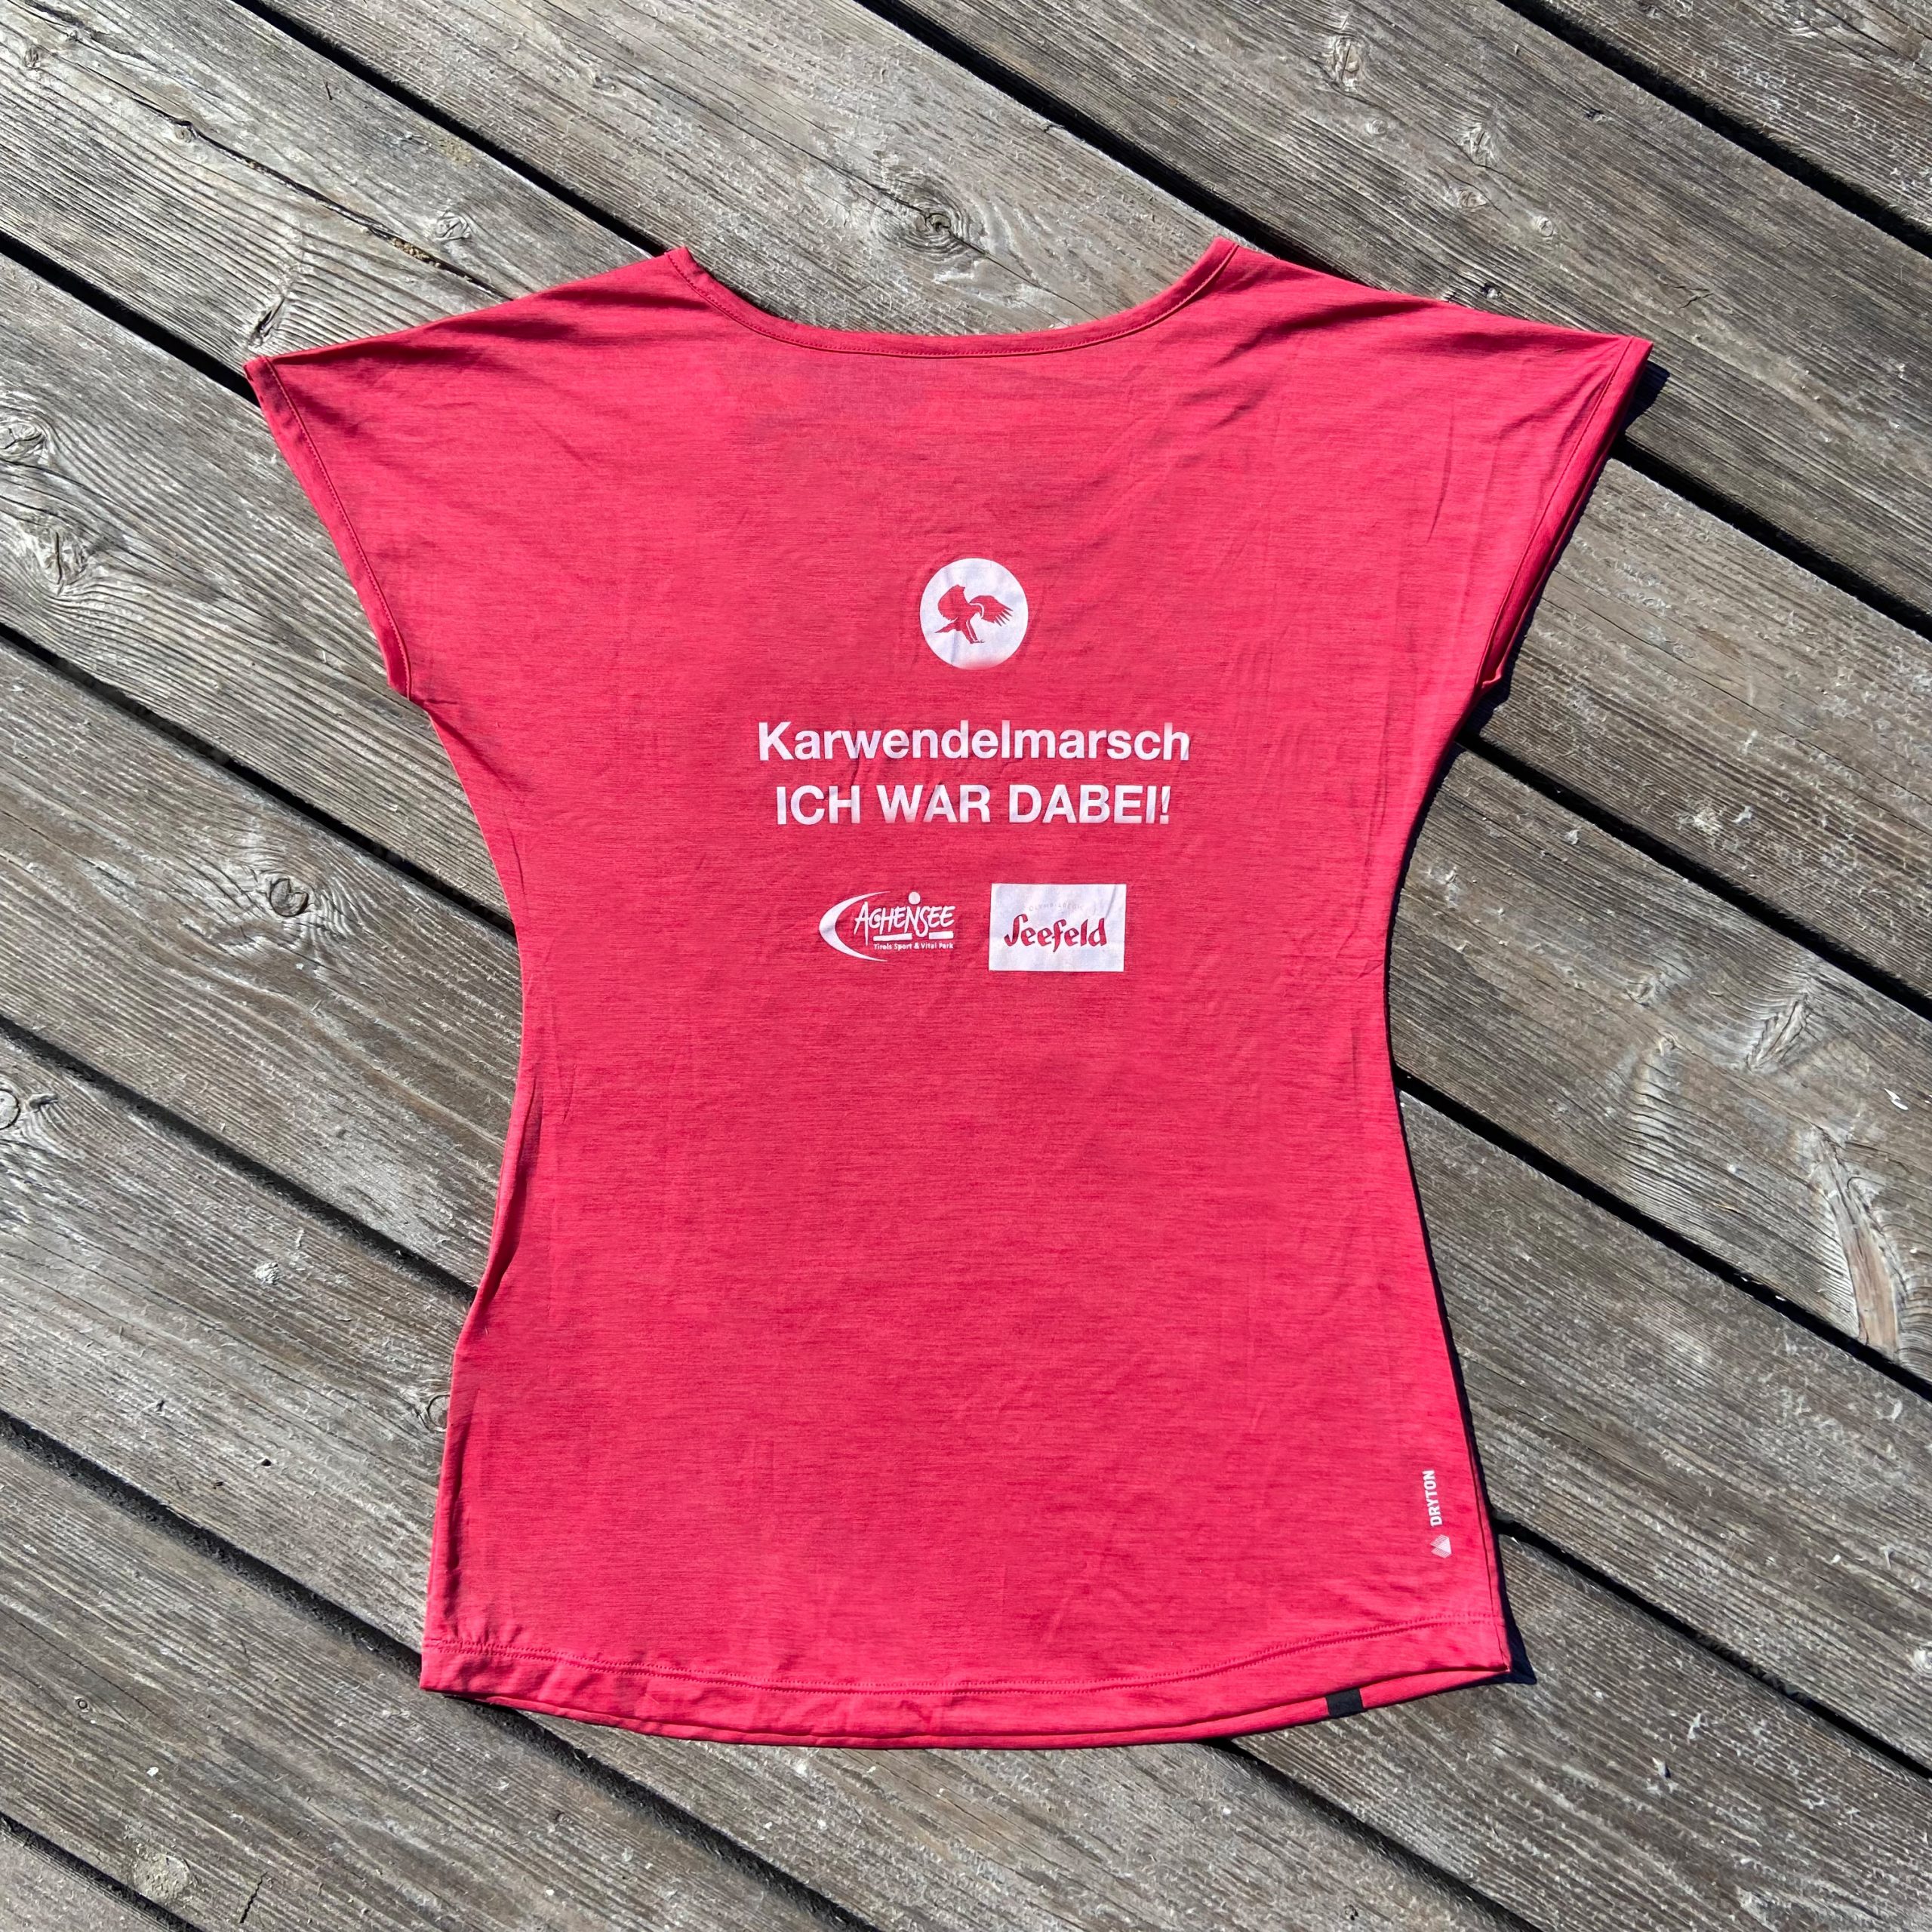 Salewa – „Ich war dabei“ Karwendelmarsch T-Shirt (Woman) 2022